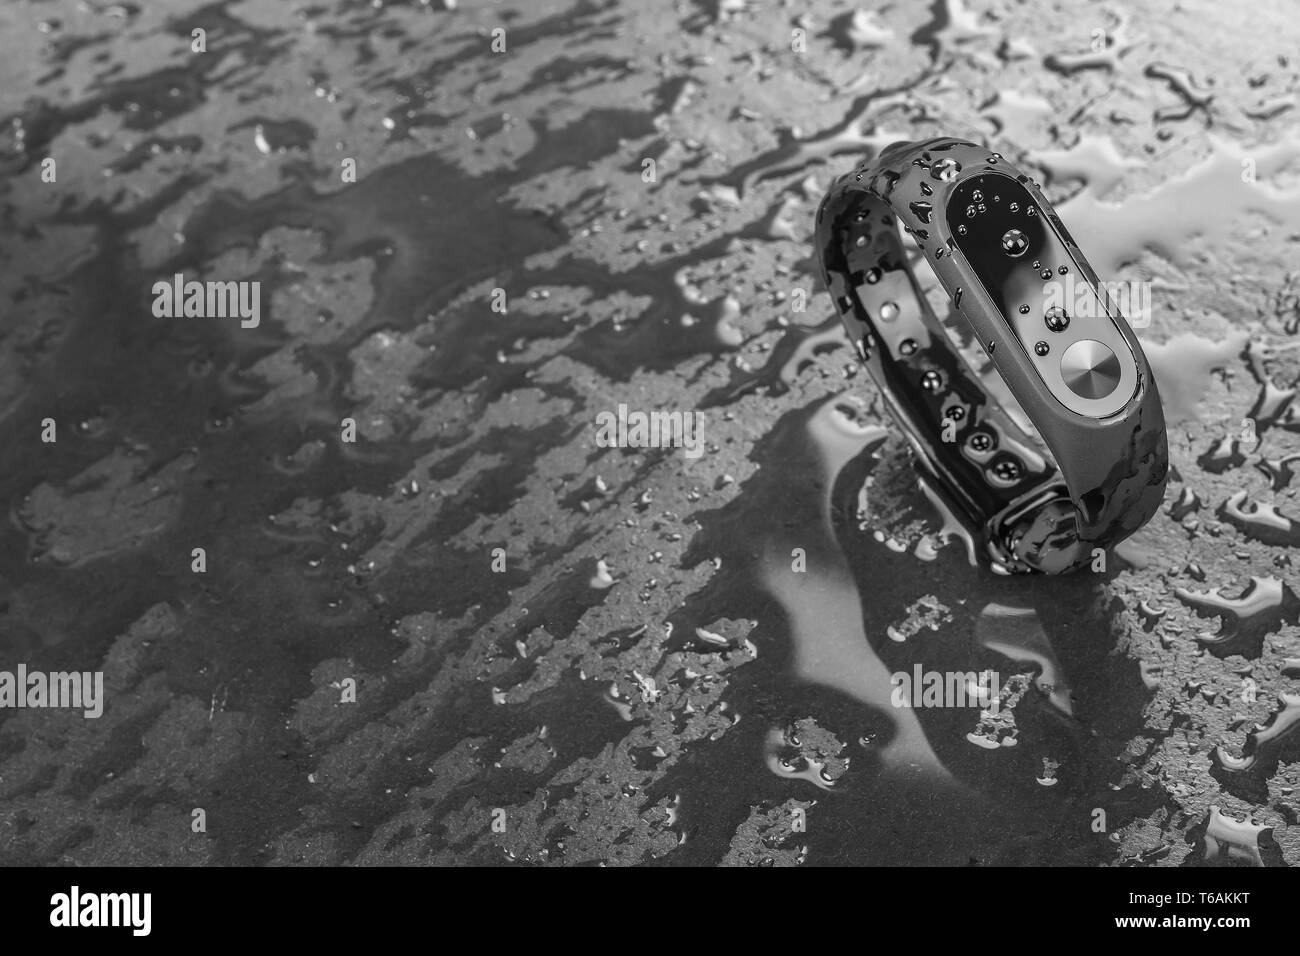 Wet braccialetto di fitness, fitness tracker su un nero ardesia sfondo con gocce di acqua Foto Stock